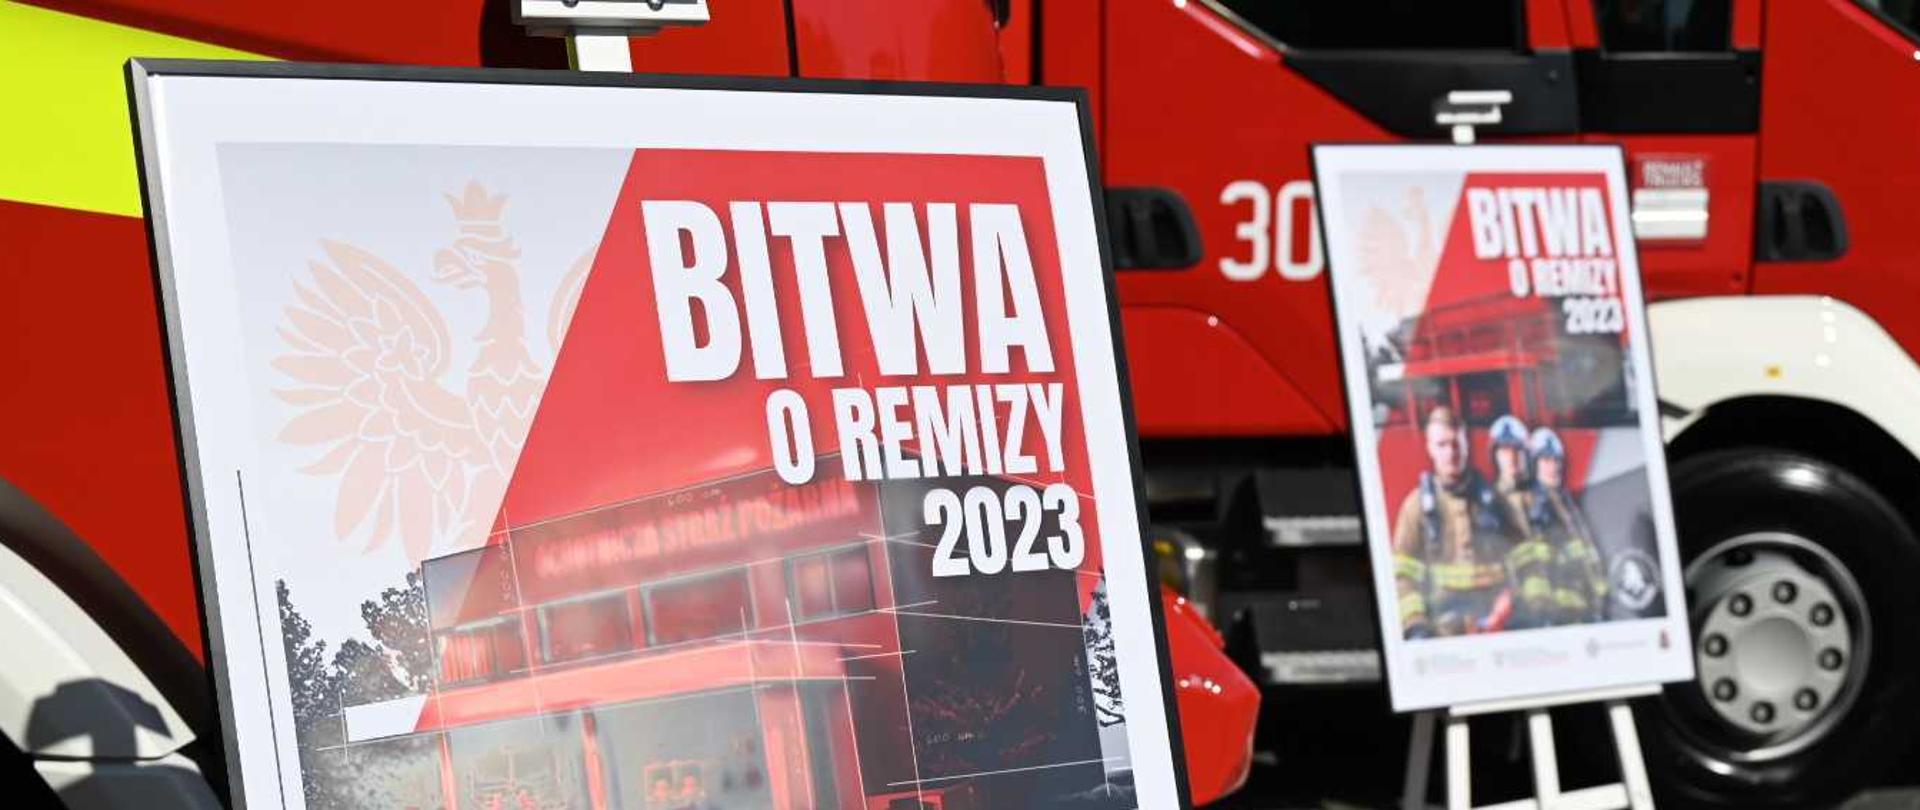 Zdjęcie przedstawia plakaty akcji "Bitwa o remizy 2023", które stoją przed wystawionymi samochodami pożarniczymi.